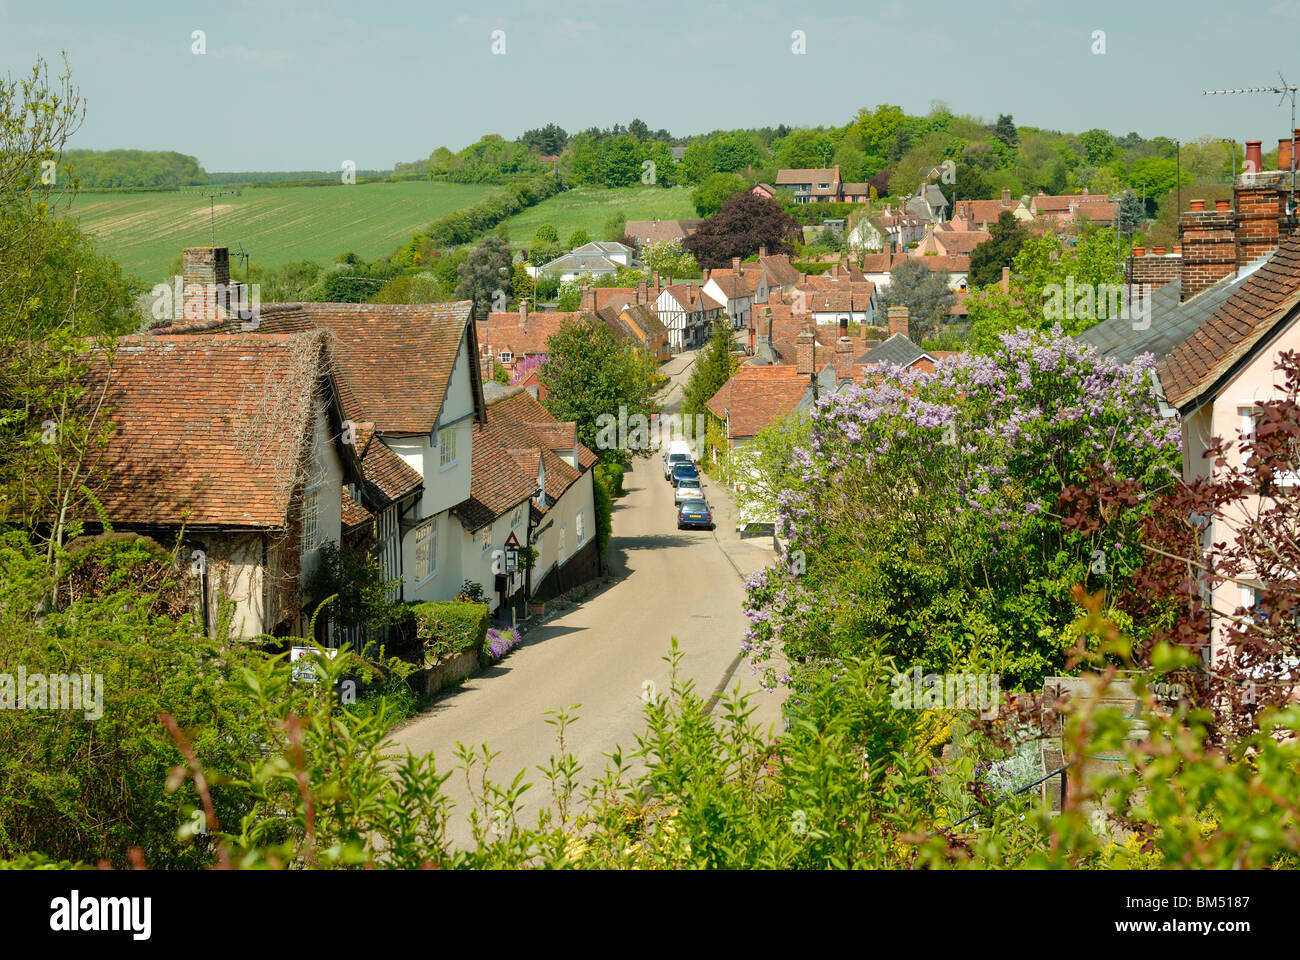 English Village Layout